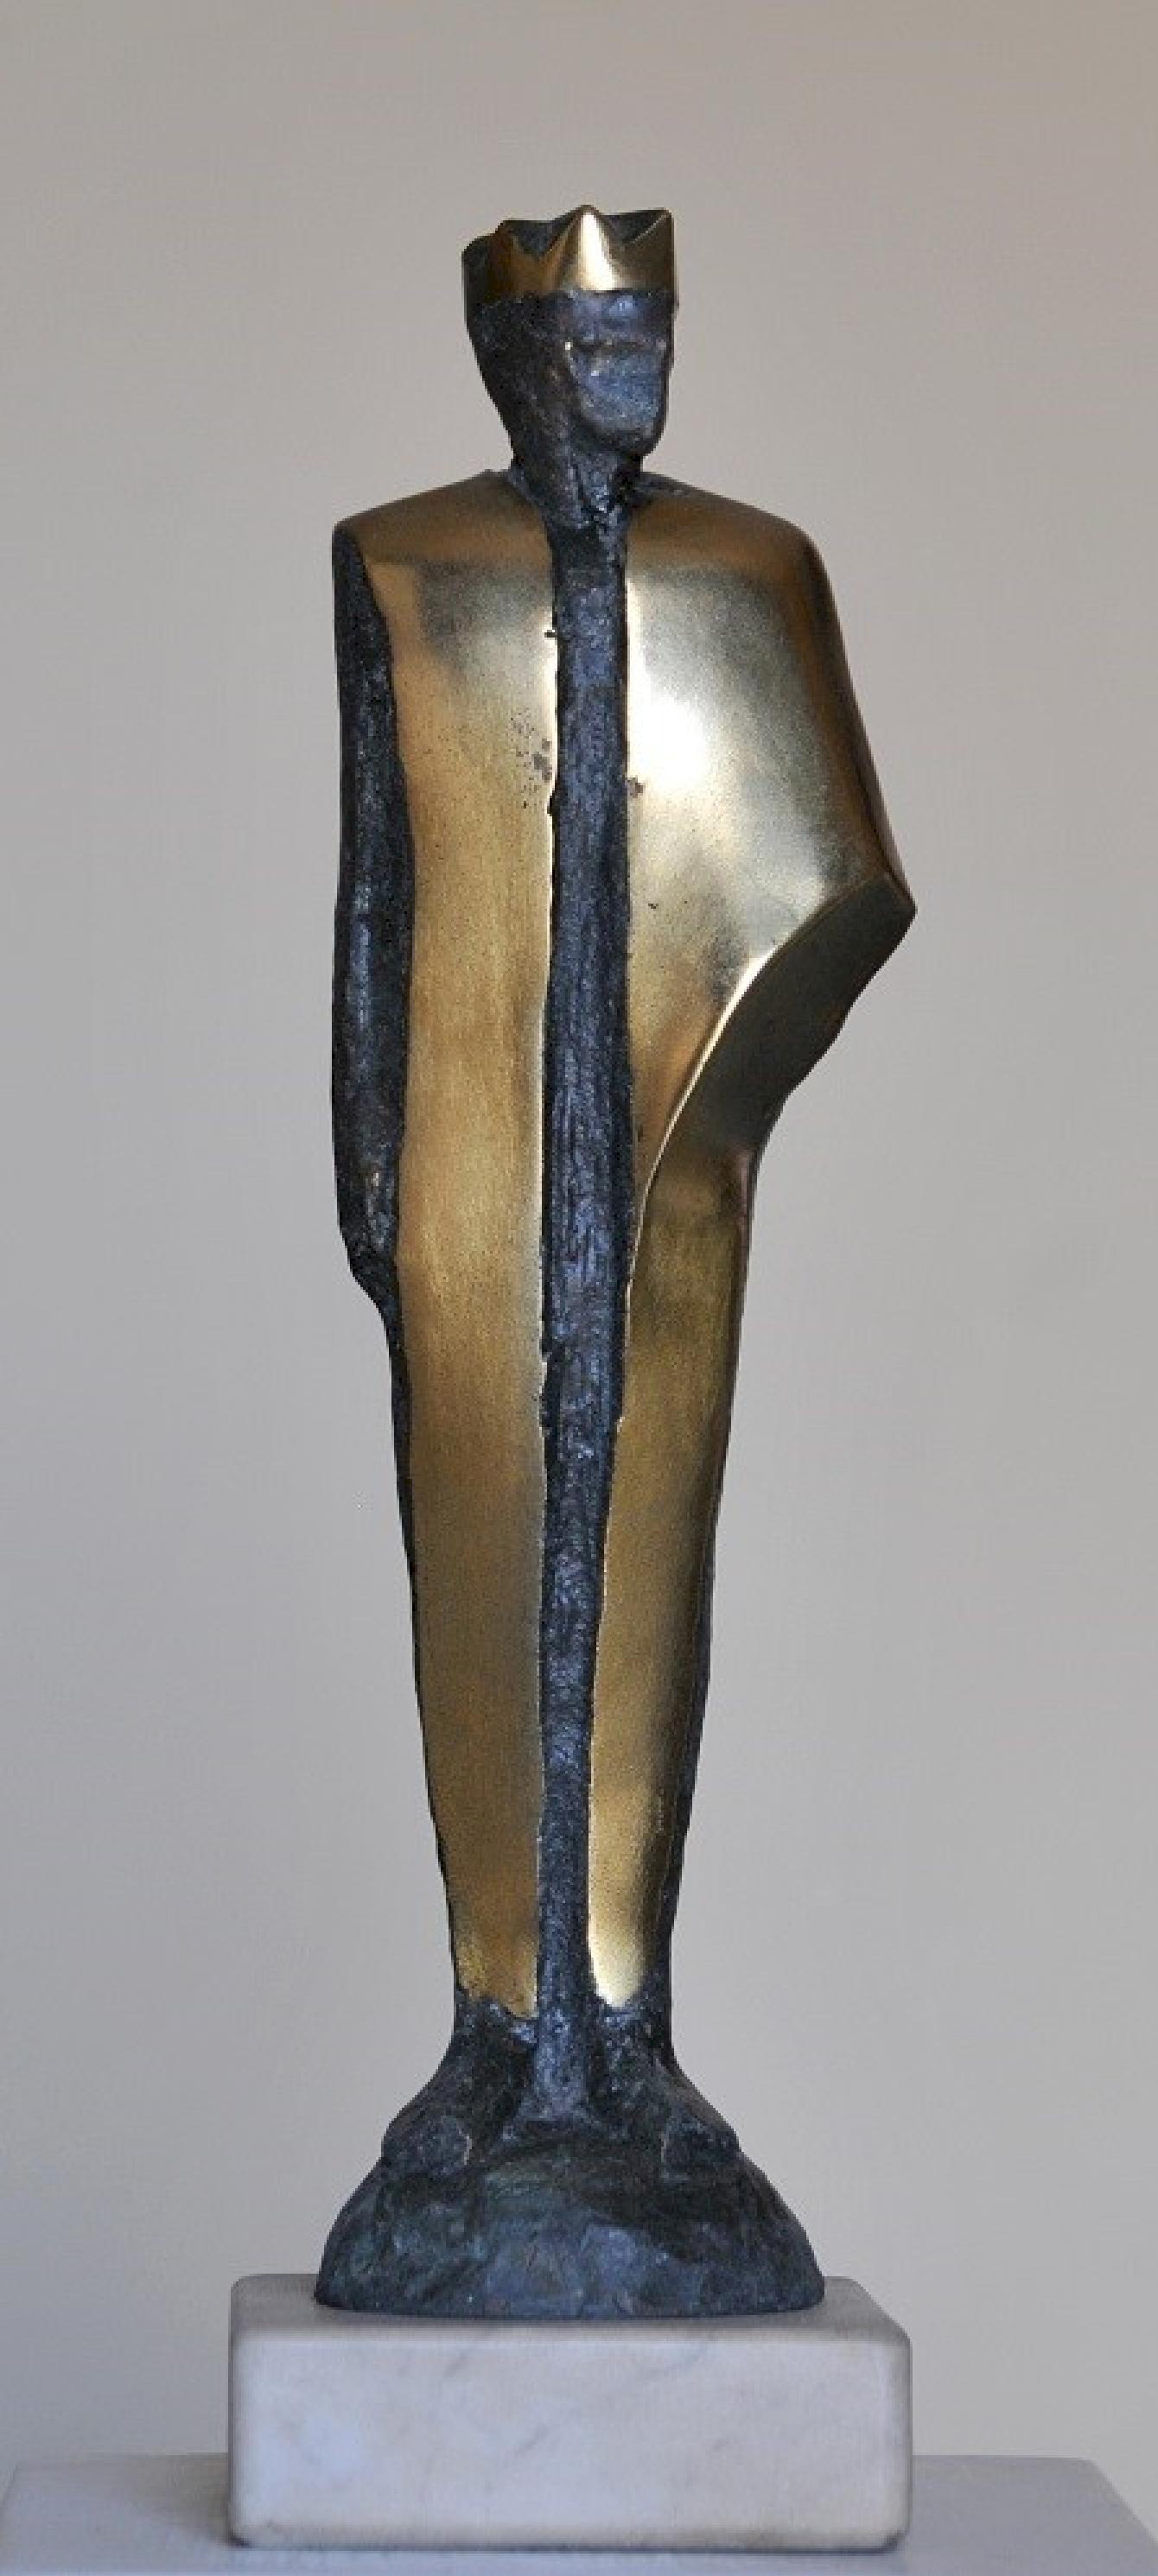 "König I" Bronze-Skulptur 16" x 4" x 3" Zoll von Sarkis Tossonian		

Sarkis Tossoonian wurde 1953 in Alexandria geboren. Er schloss sein Studium an der Fakultät für Bildende Künste/Bildhauerei 1979 ab. Seit 1980 und bis heute stellt er in Einzel-